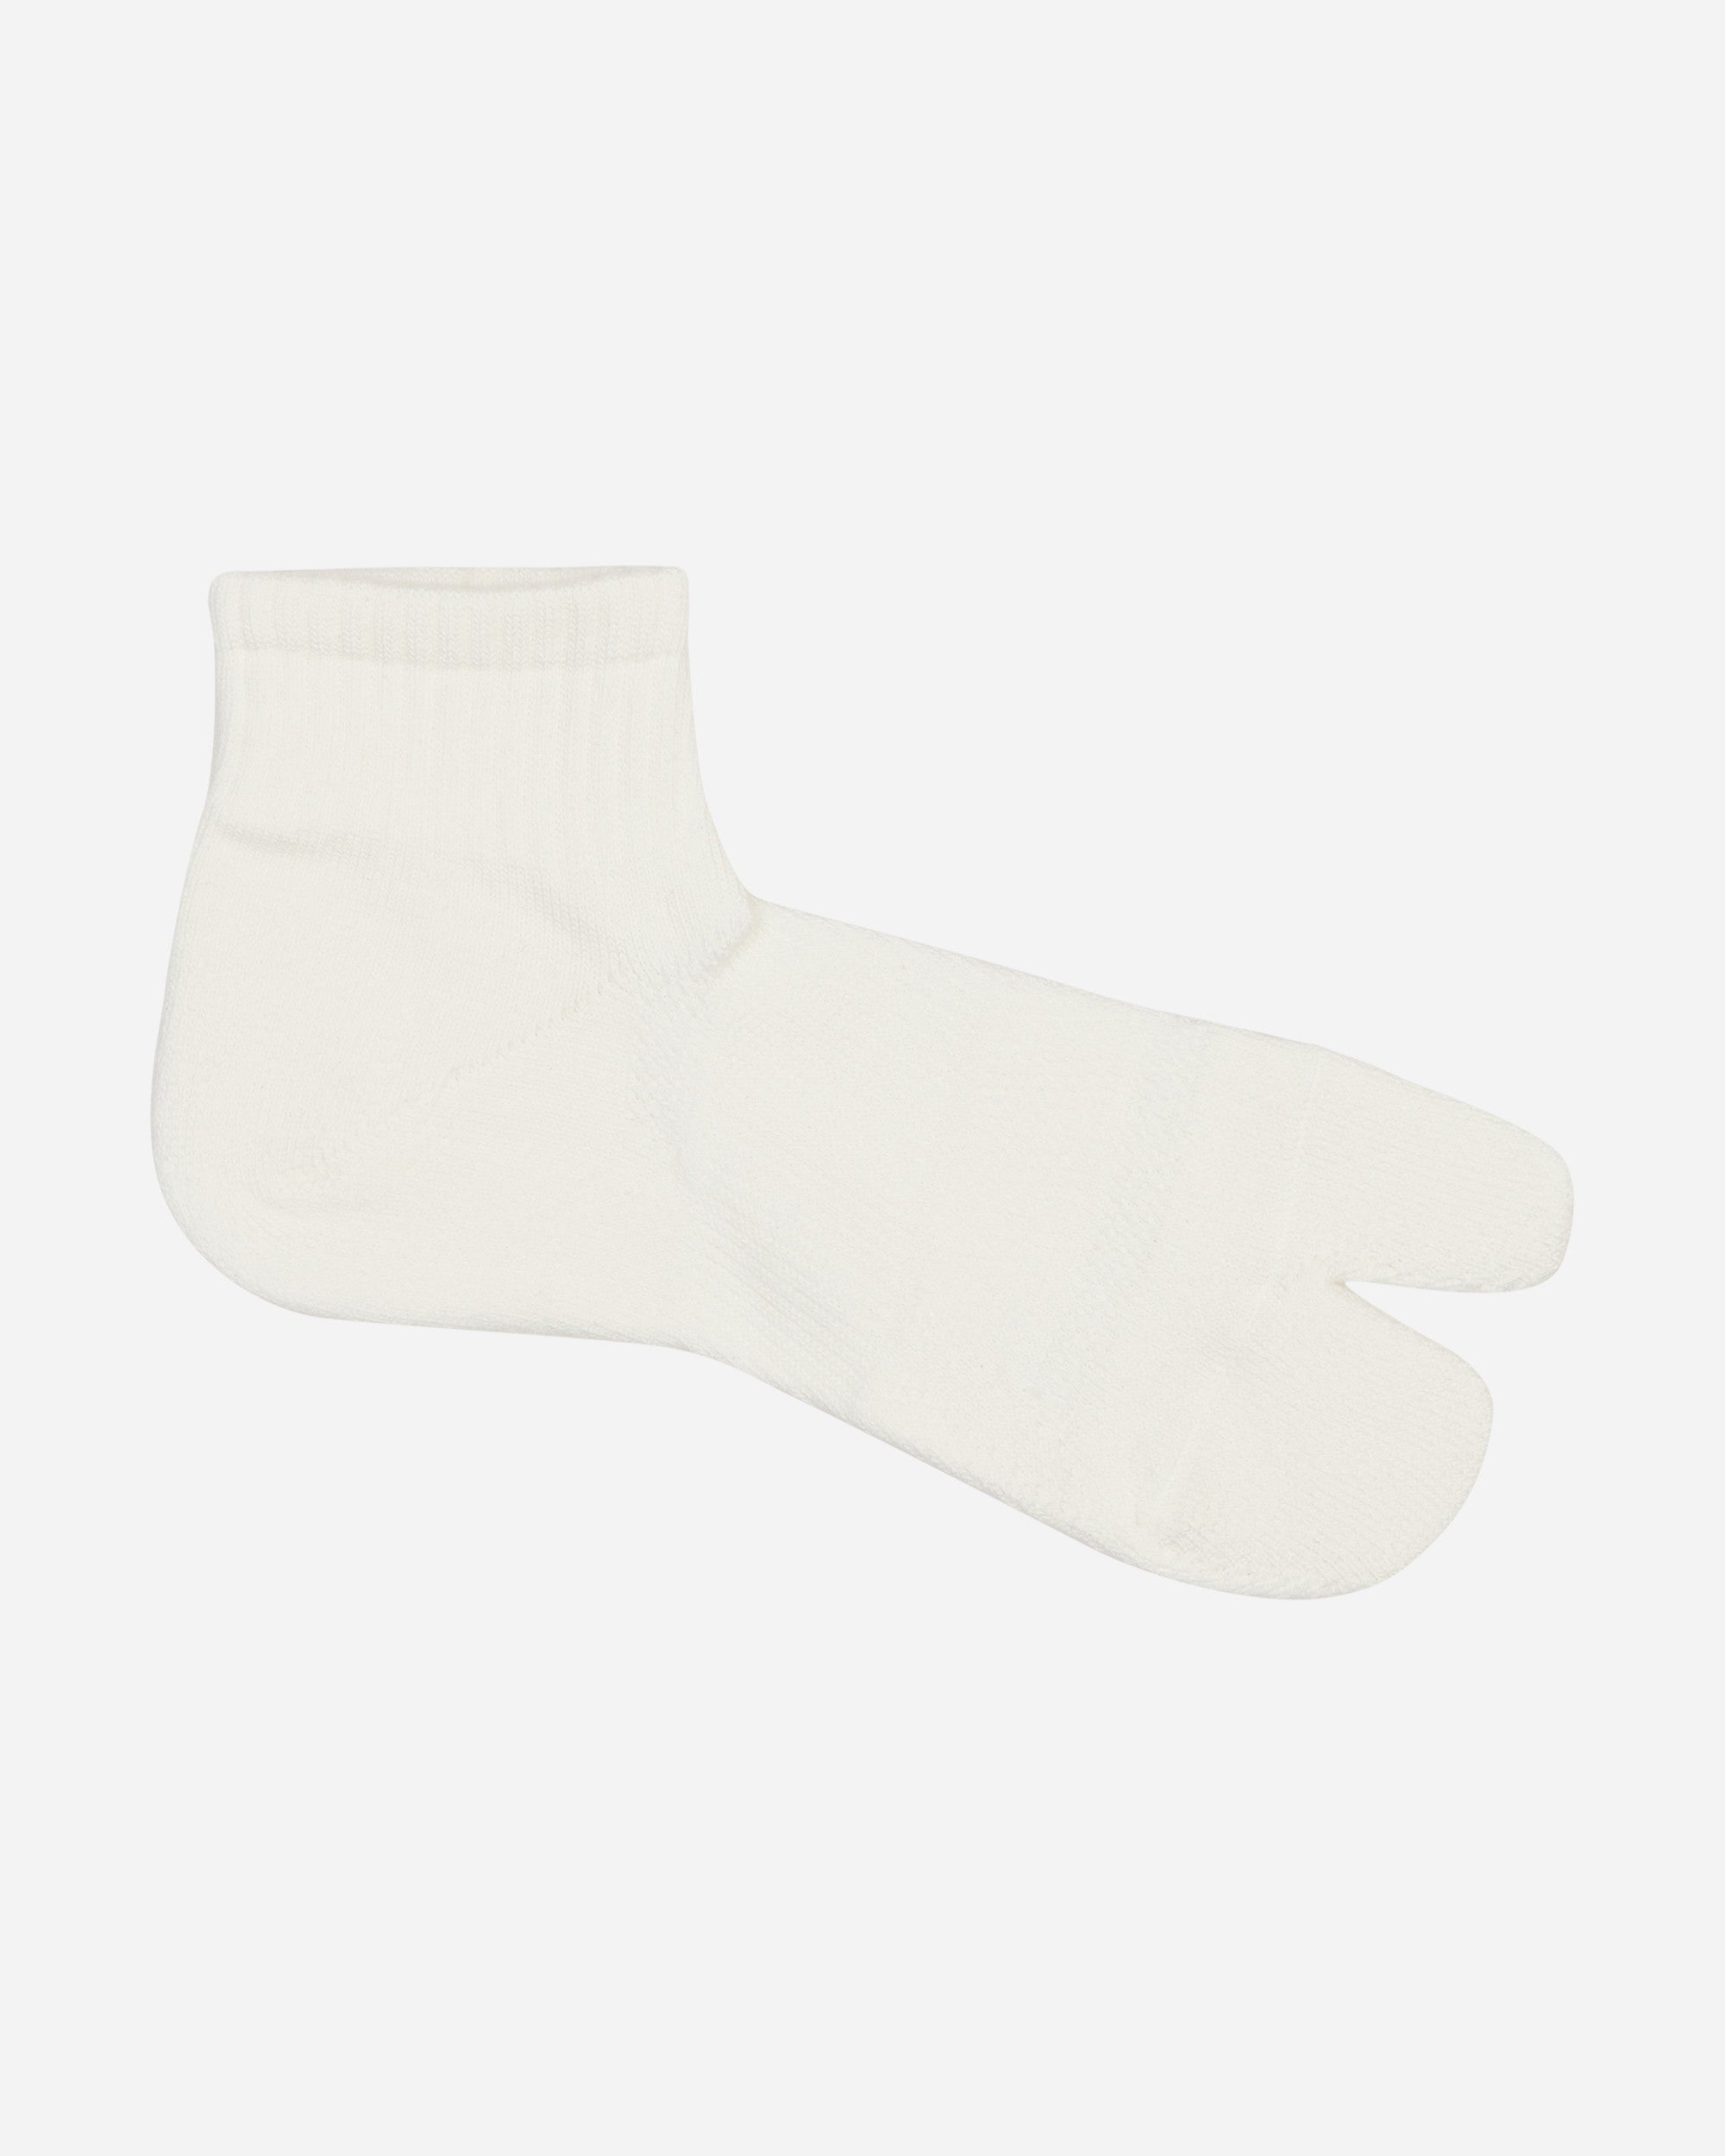 Snow Peak Mid Tabi Sox White Underwear Socks UG-693 WH